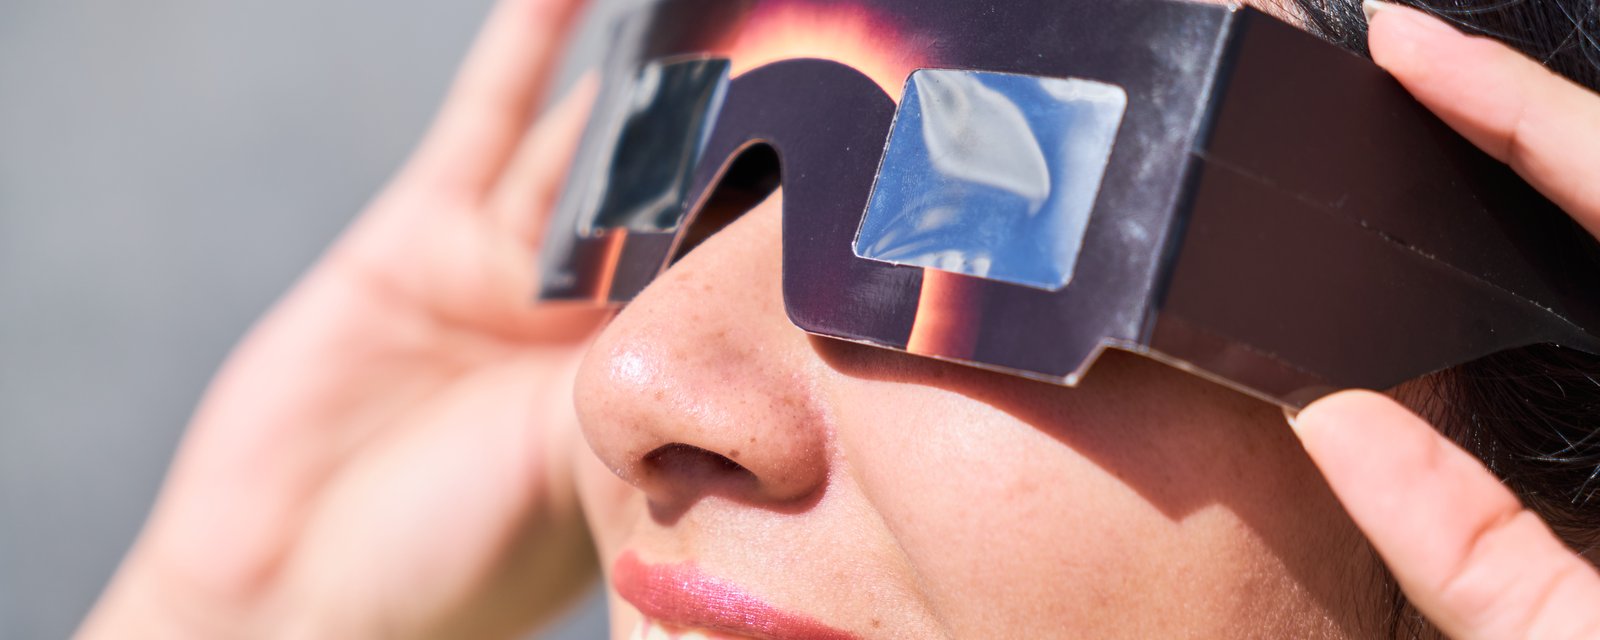 28 cas de lésions oculaires au Québec à la suite de l’éclipse solaire.